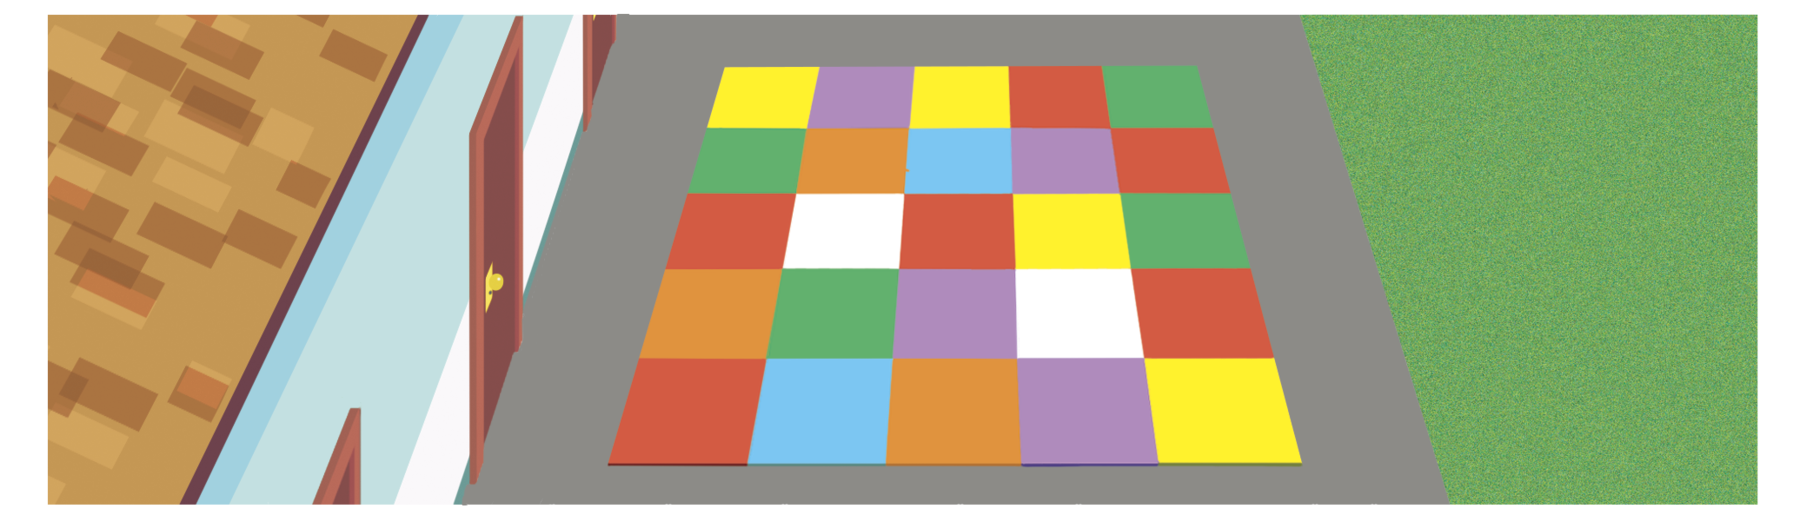 Ilustração. Vista de cima de um espaço recreativo onde há um quadrado composto por 25 quadrados menores coloridos.